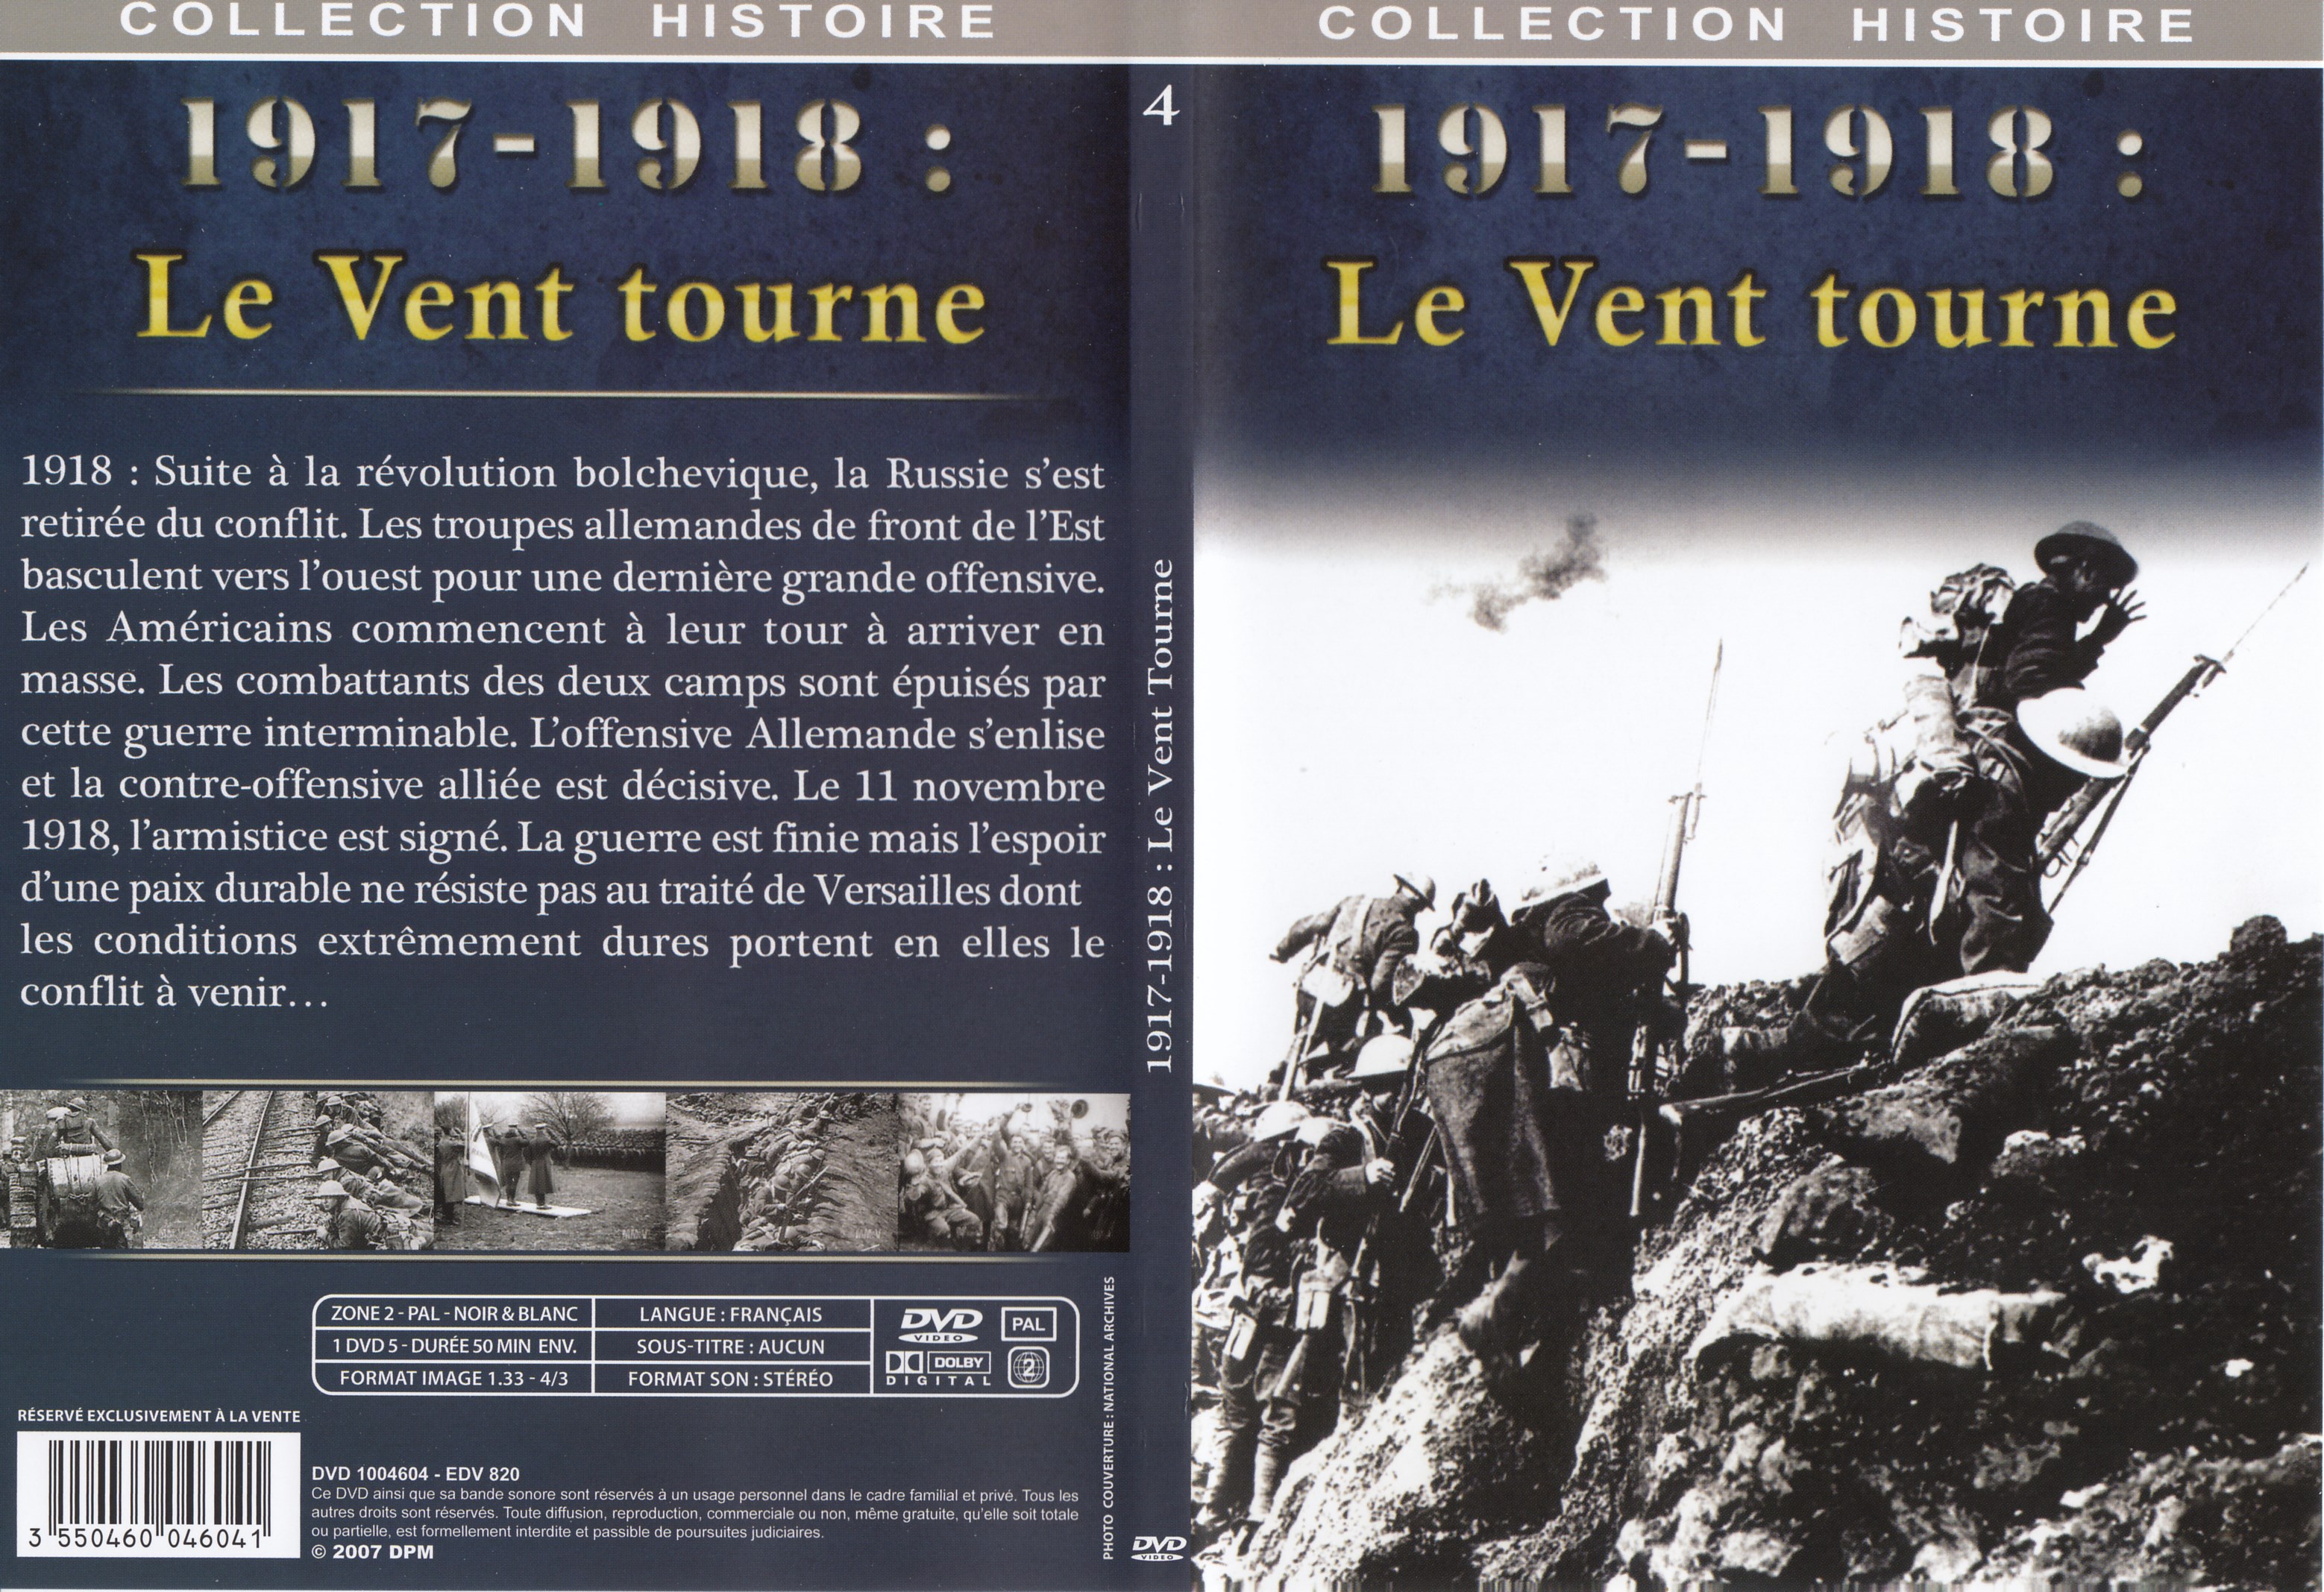 Jaquette DVD Collection Histoire DVD 4 = 1917 - 1918 Le vent tourne